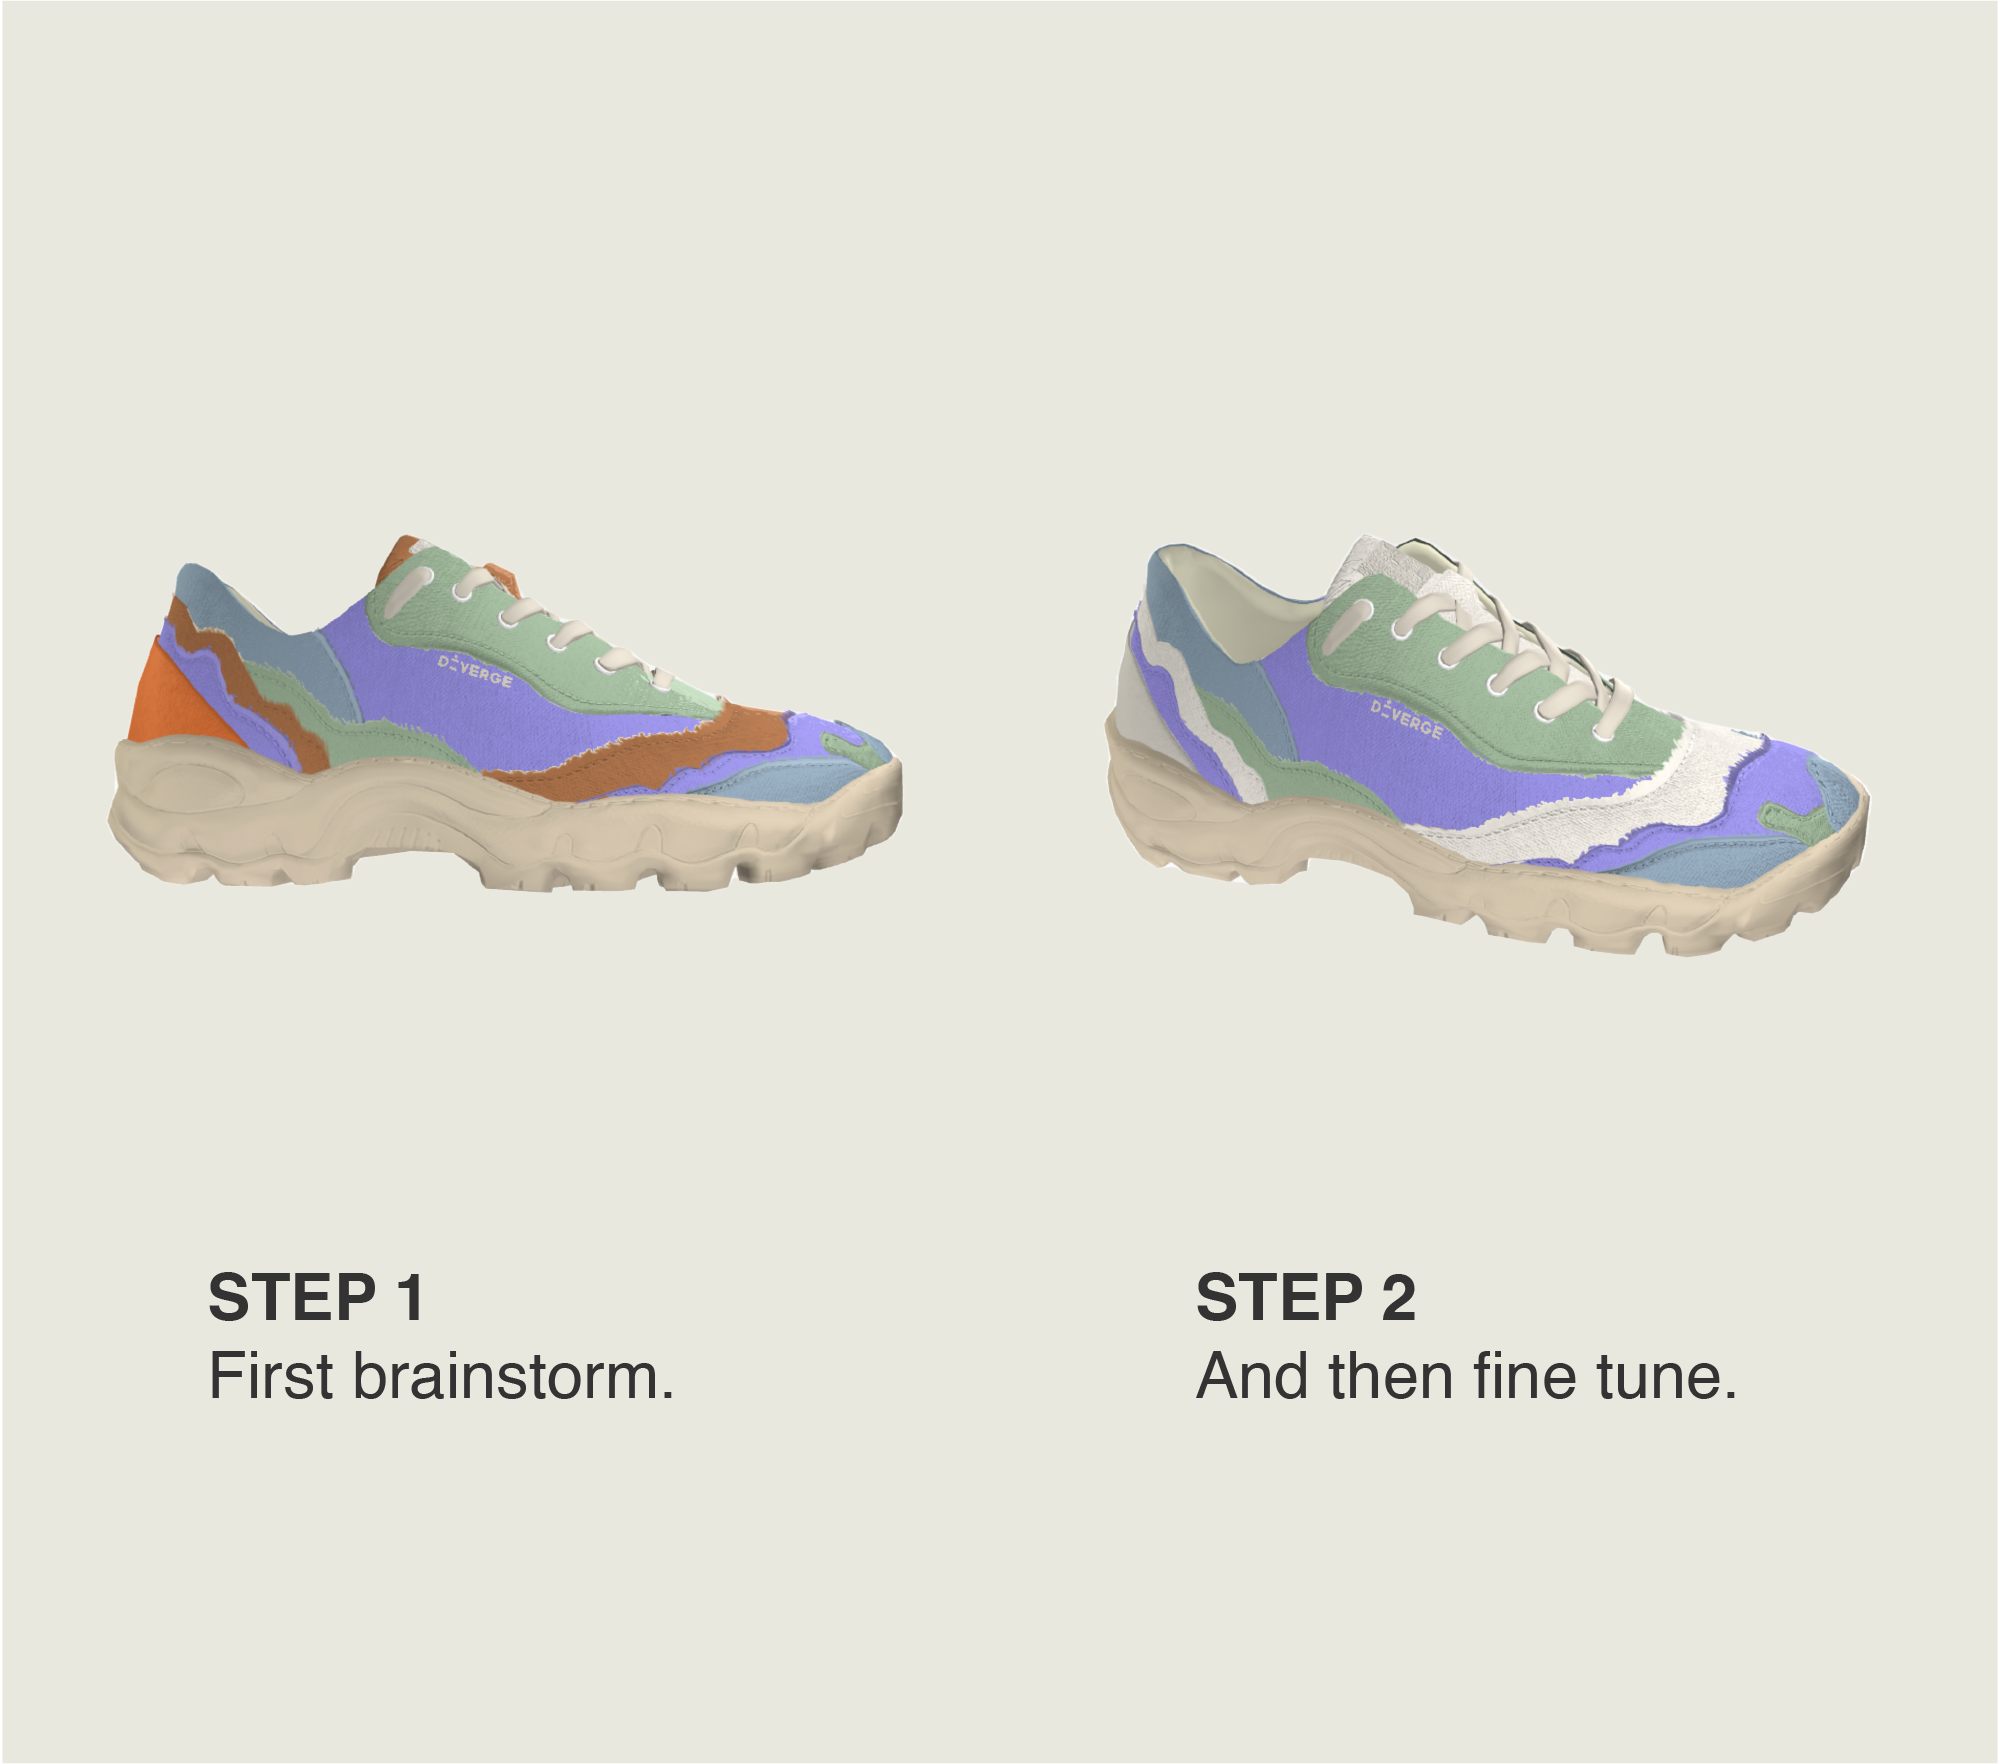 Deux types de chaussures basses personnalisées sneakers à partir de Diverge.